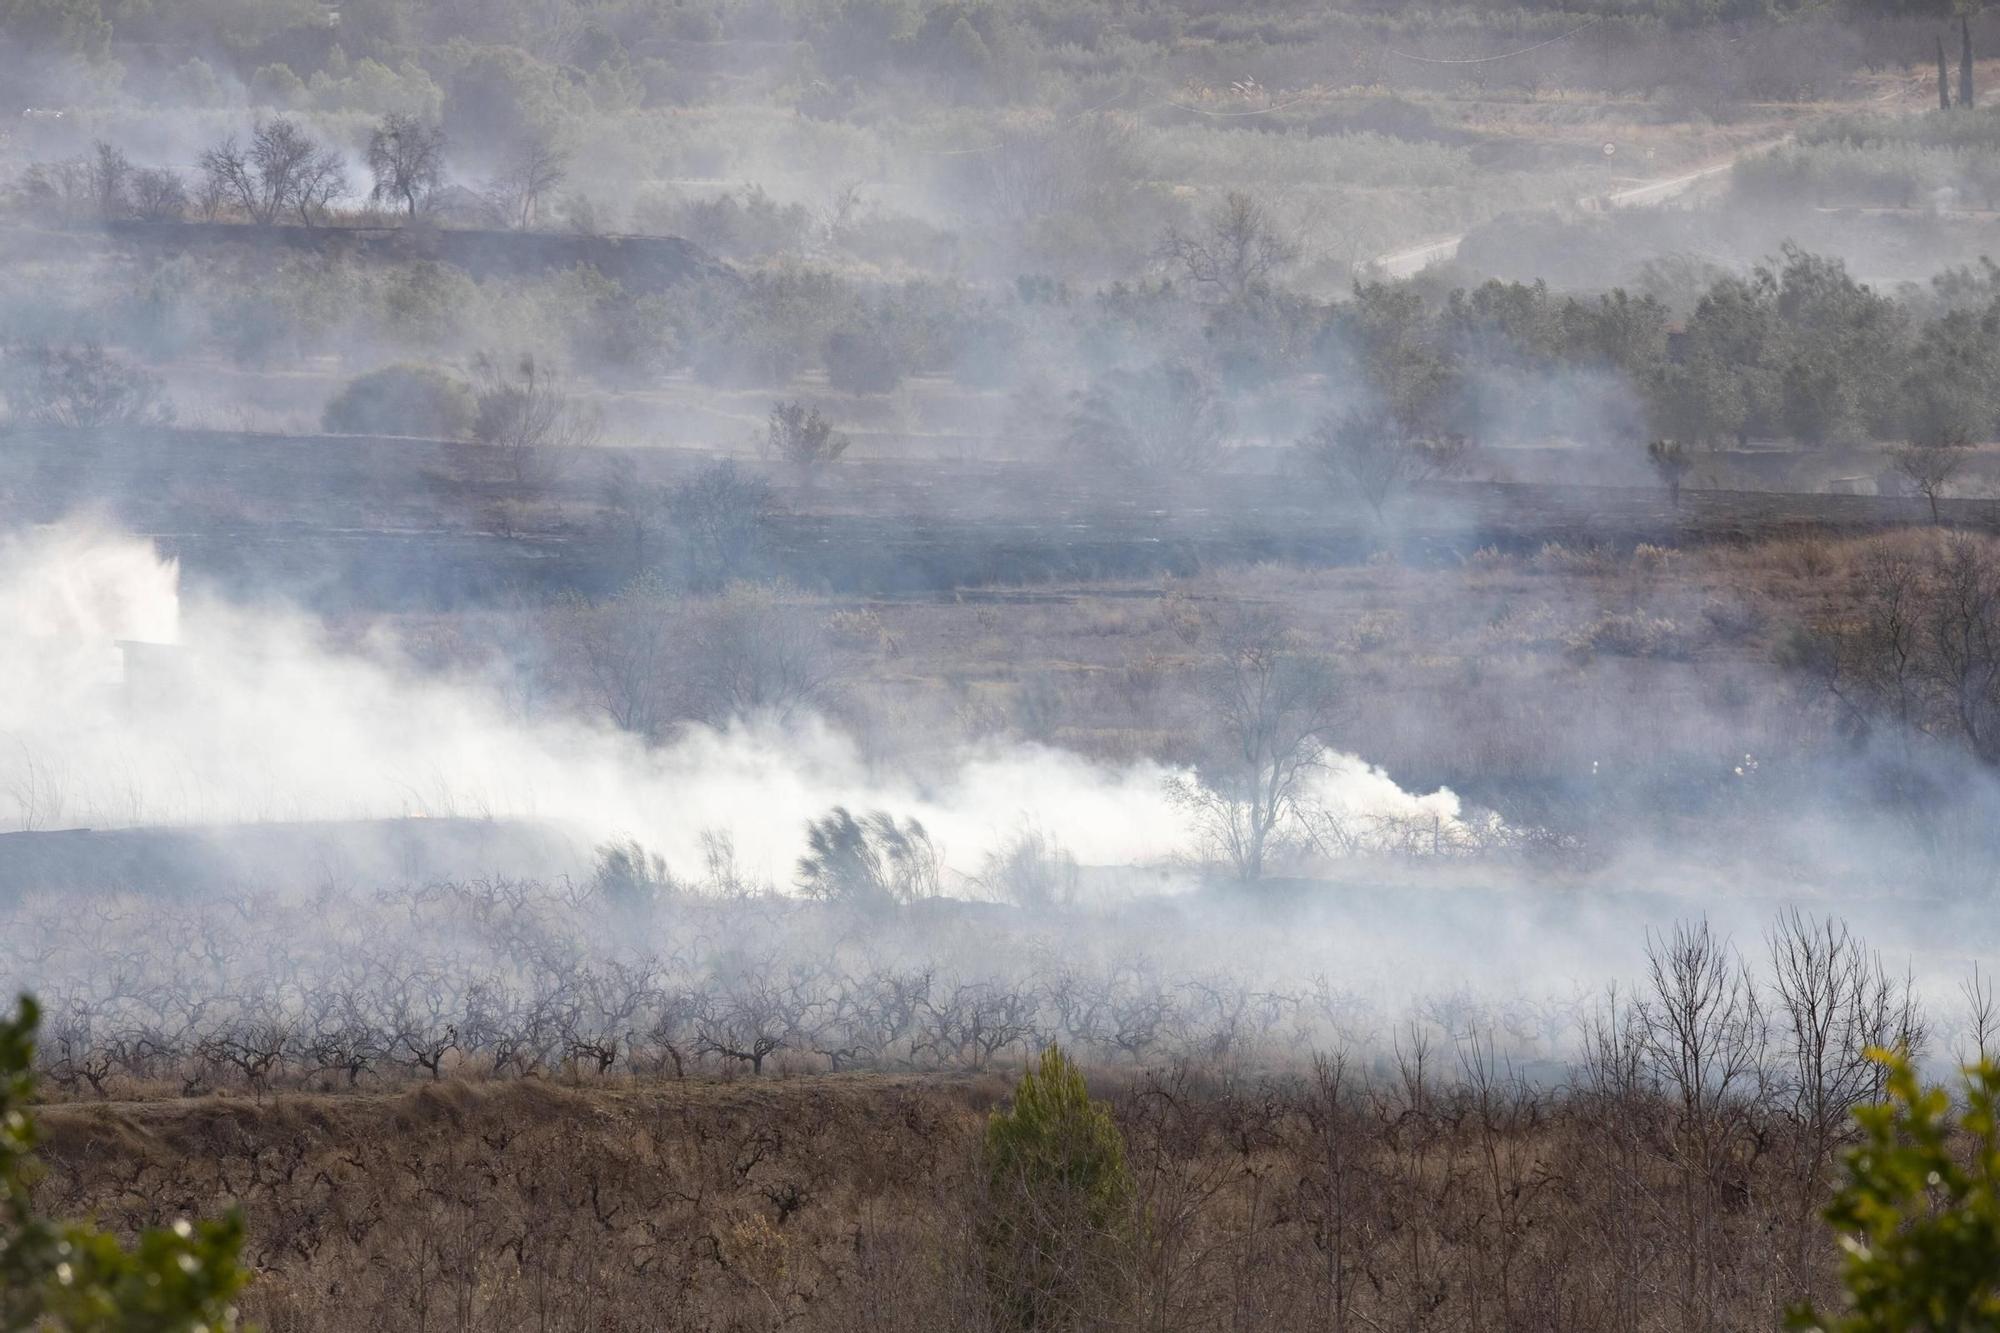 Movilizan varios medios aéreas para extinguir un incendio cercano a una pirotecnica en Bèlgida